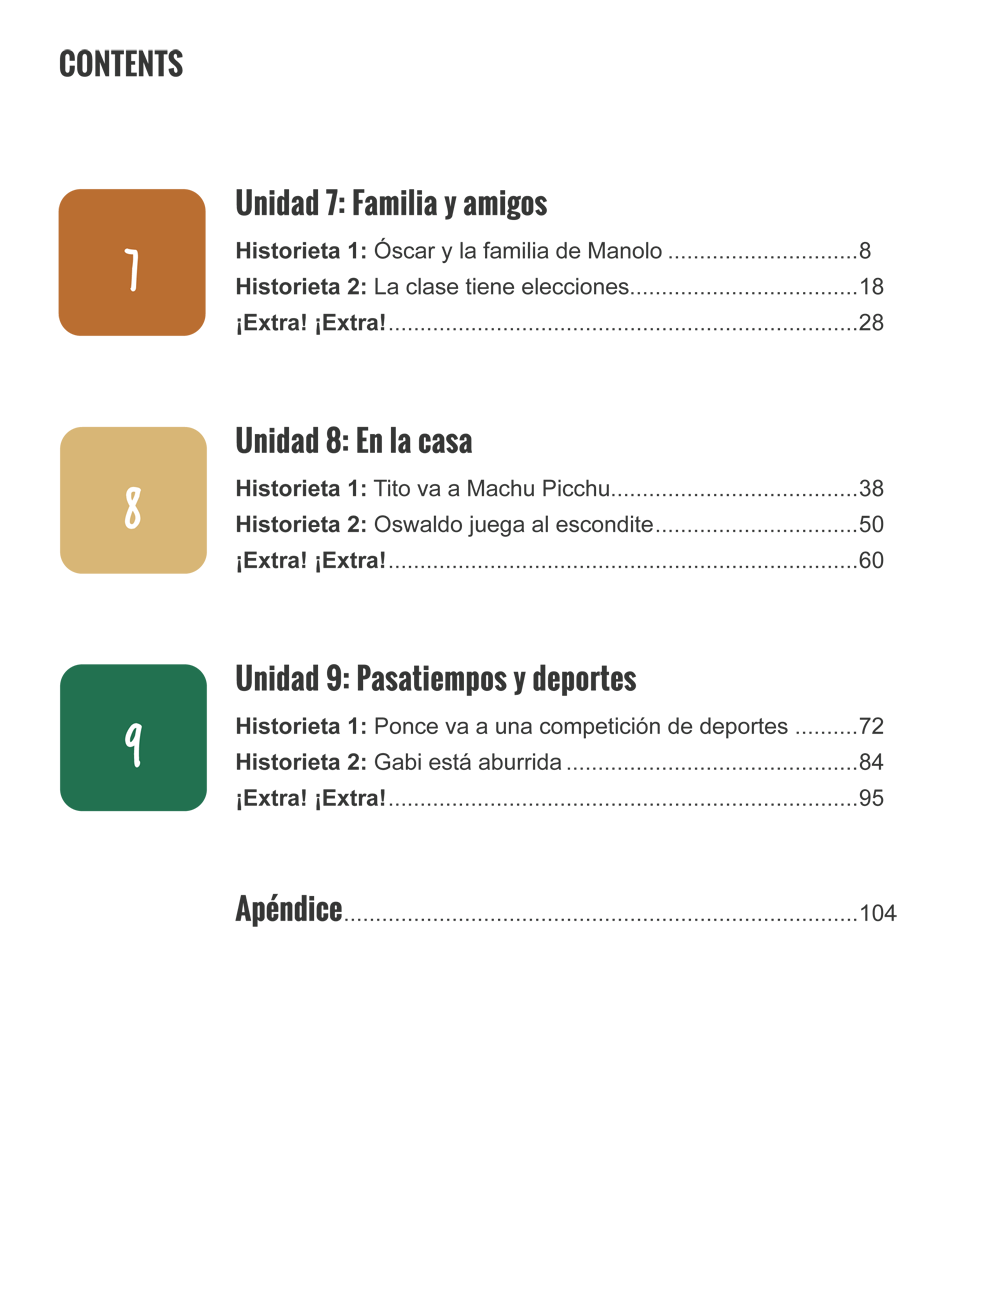 Nuestra historia: Primaria 1 (Unidades 7-9) - Print Edition